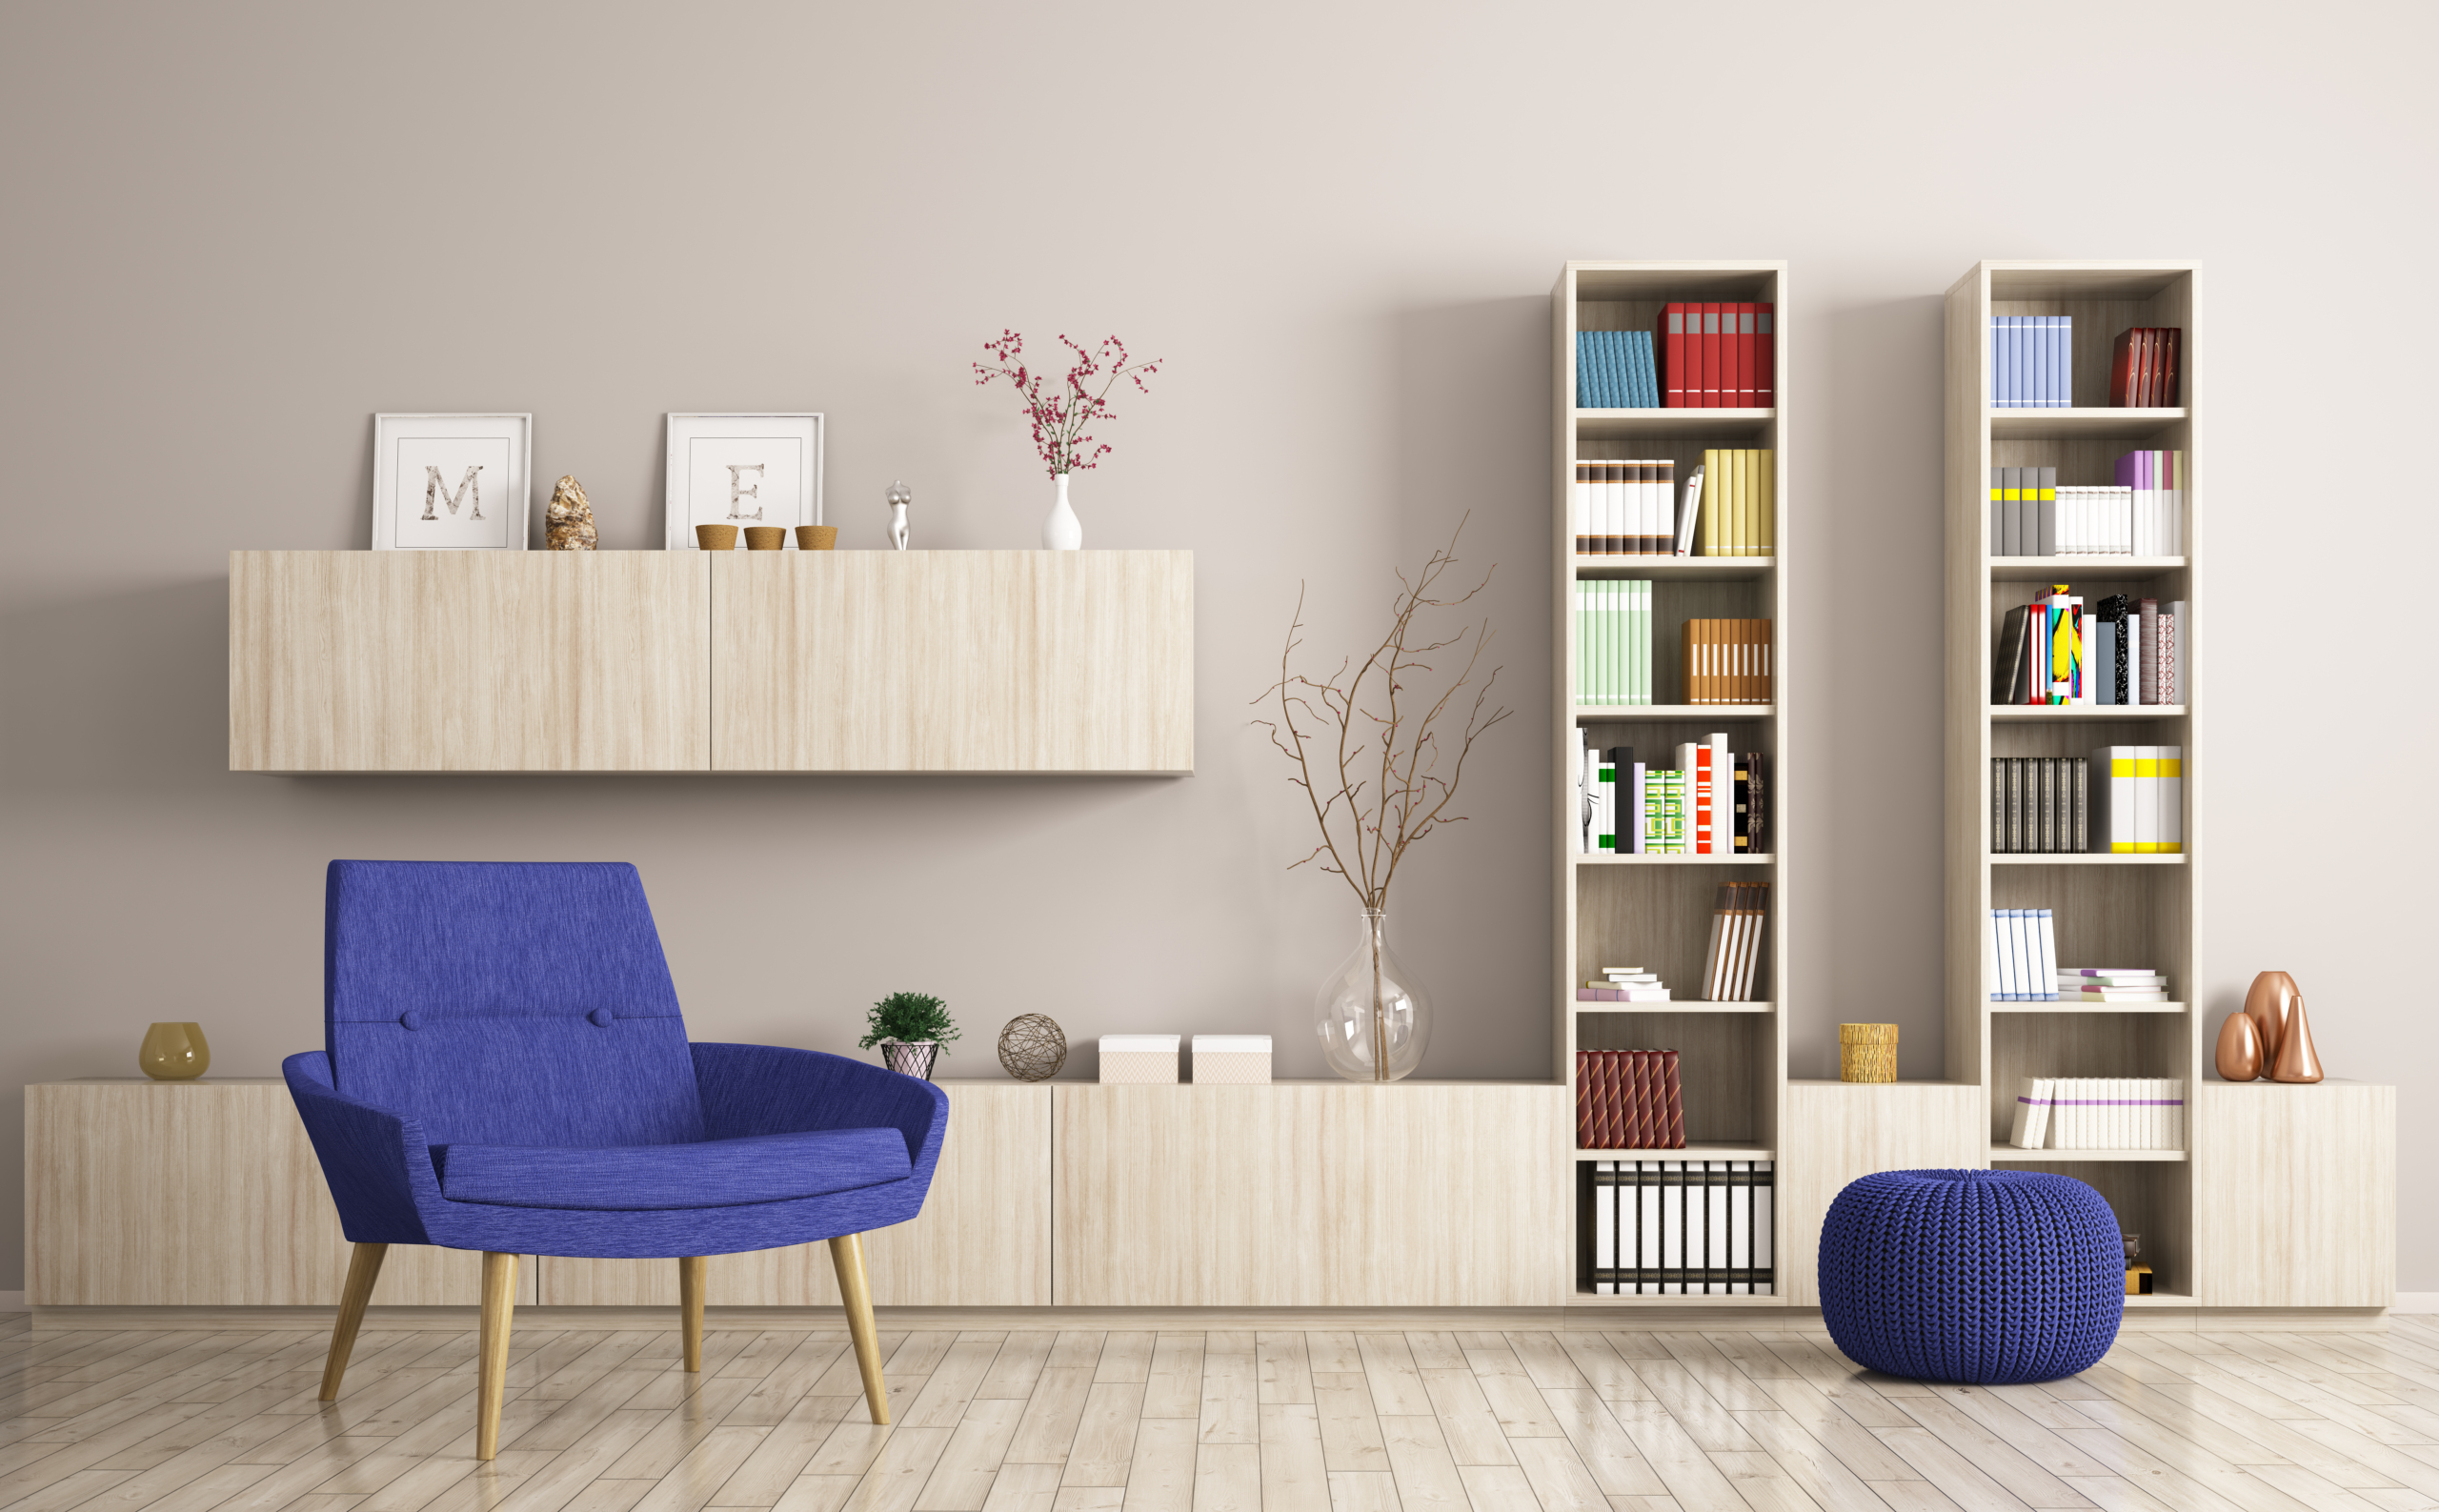 Thiết kế tủ đựng đồ hoặc giá sách cho căn phòng để có thể tận dụng không gian tốt hơn. (Ảnh: Shutterstock)